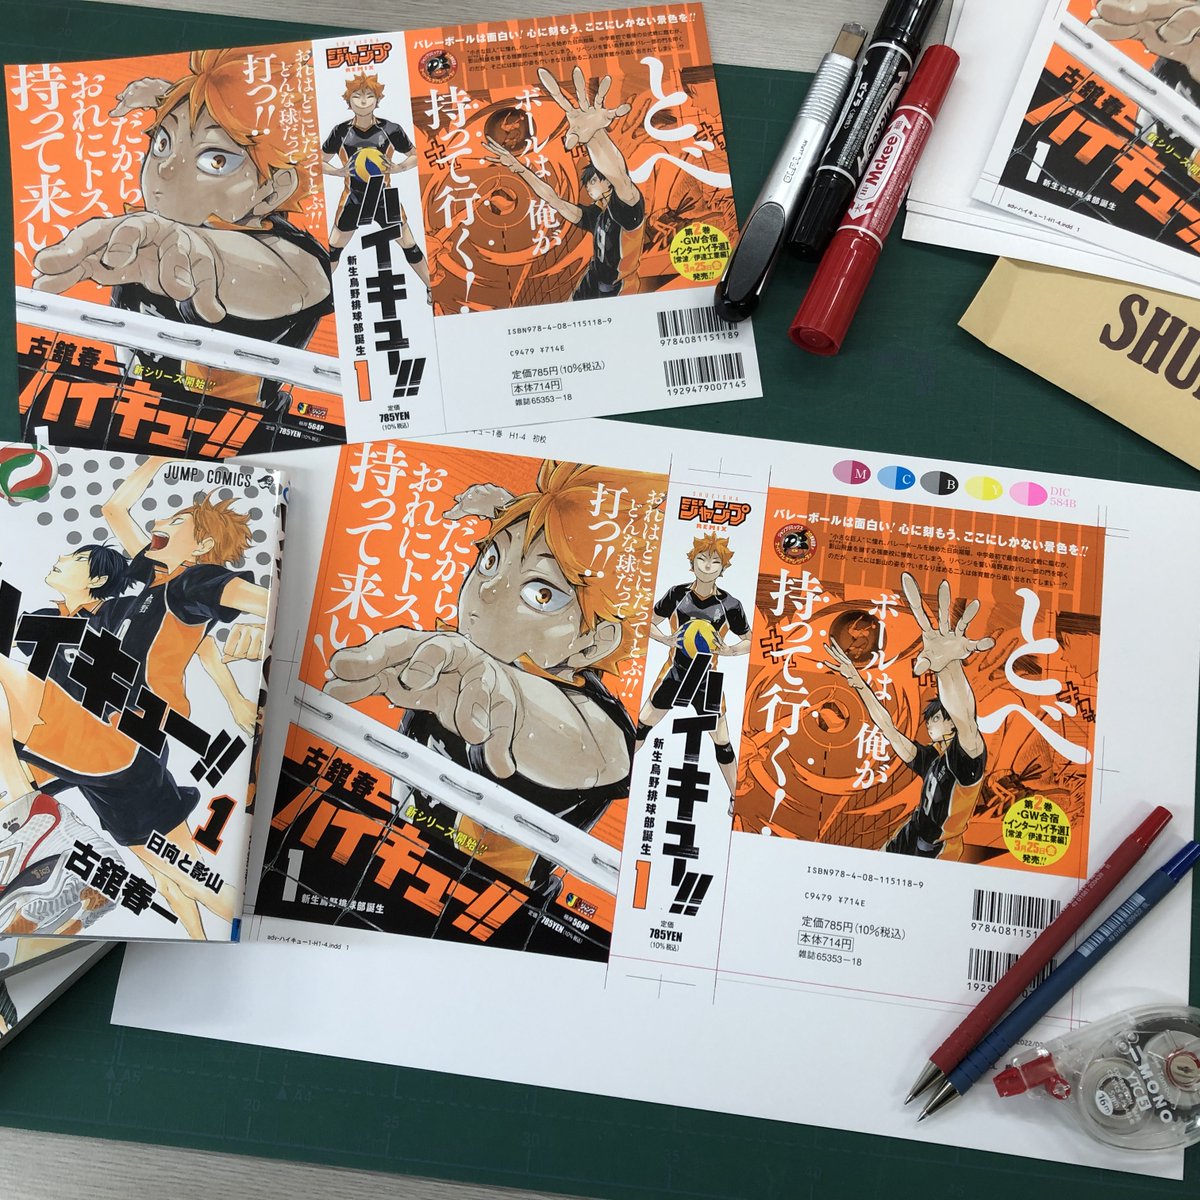 ハイキュー リミックス 16巻 アニメイト特典付き | ハイキュー 